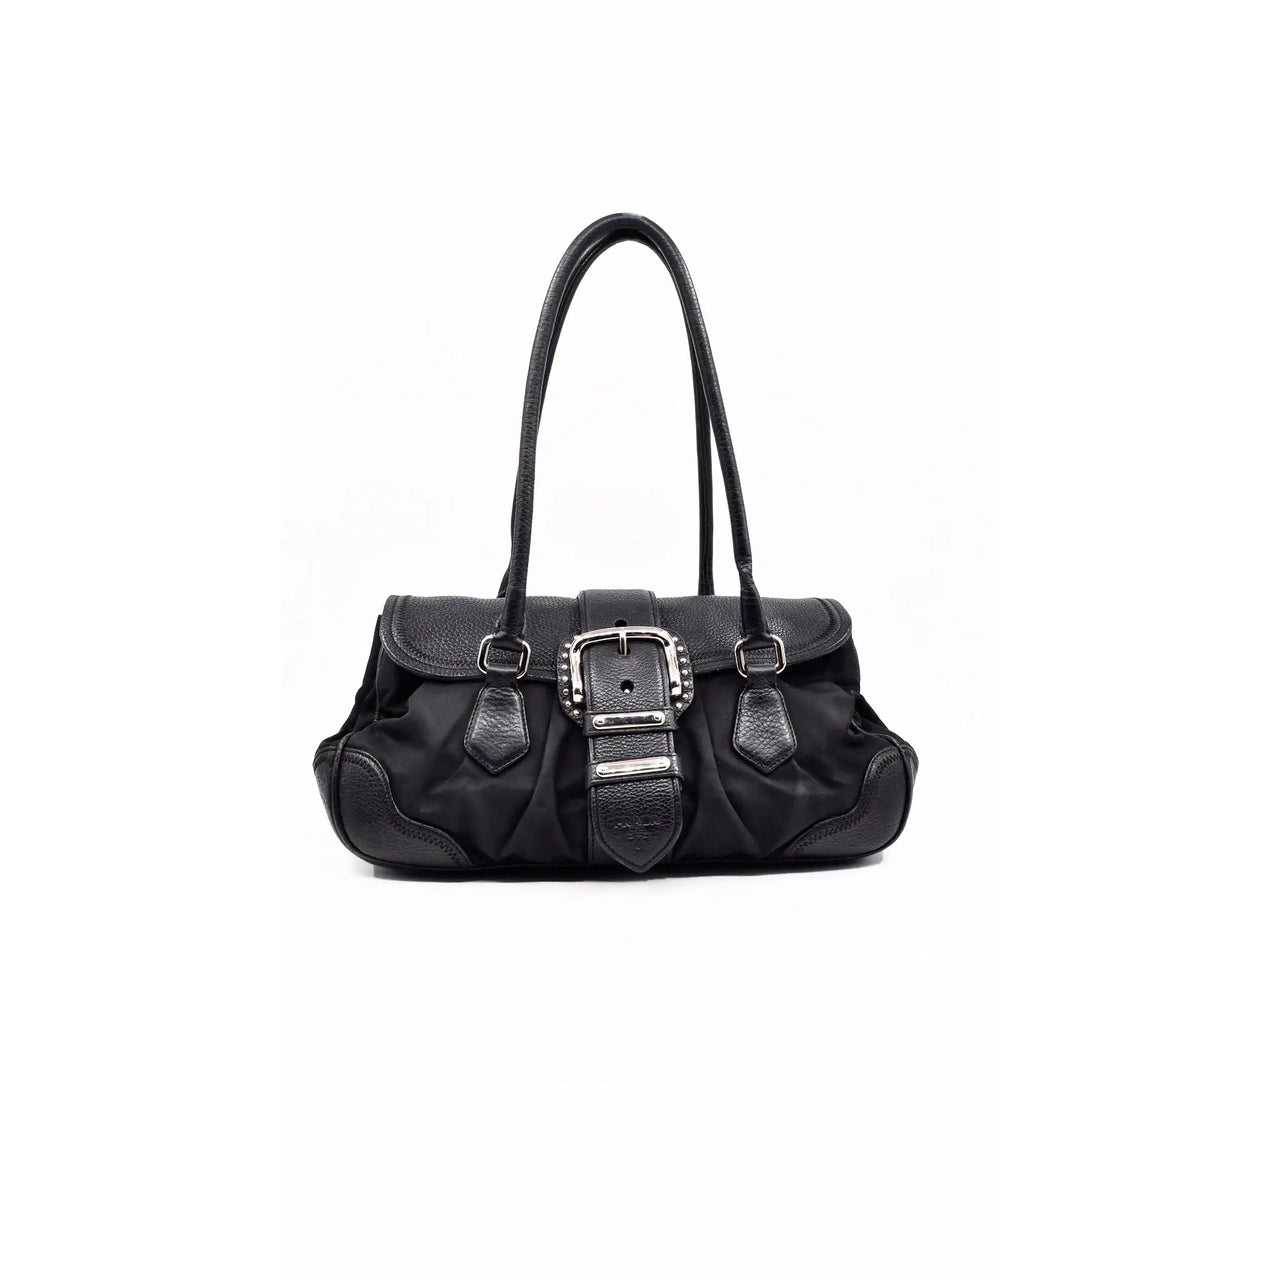 A vintage 90's Prada Black Leather Shoulder Bag – The Hosta